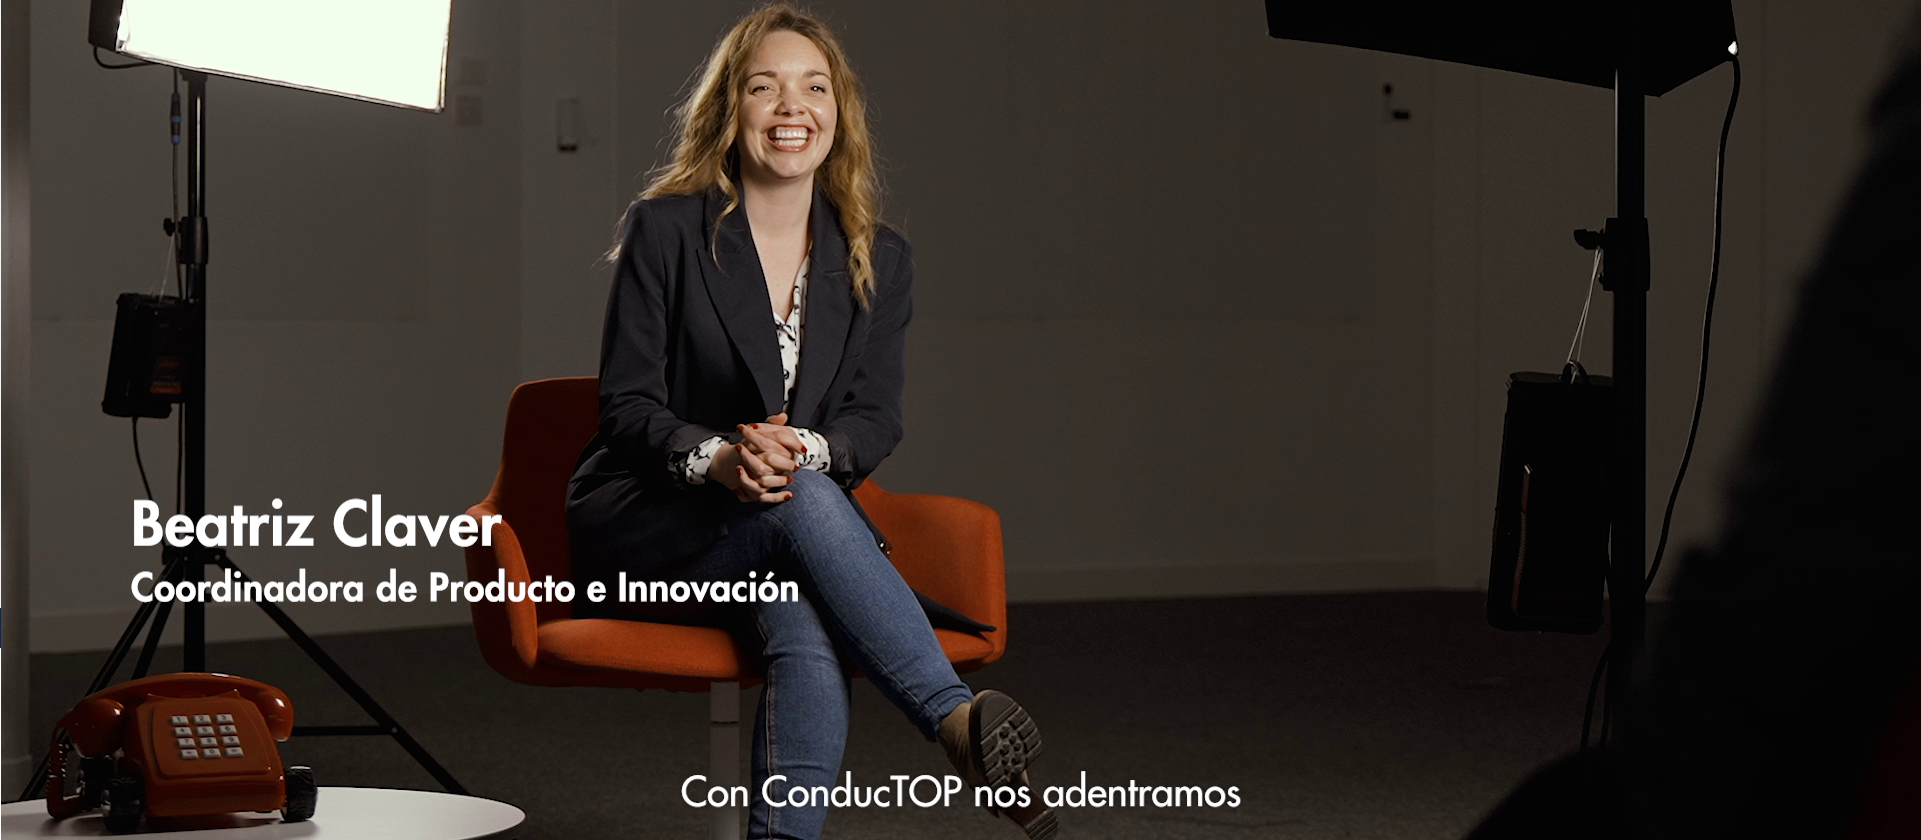 Beatriz Claver, Coordinadora de Producto e Innovación, es la protagonista de este capítulo